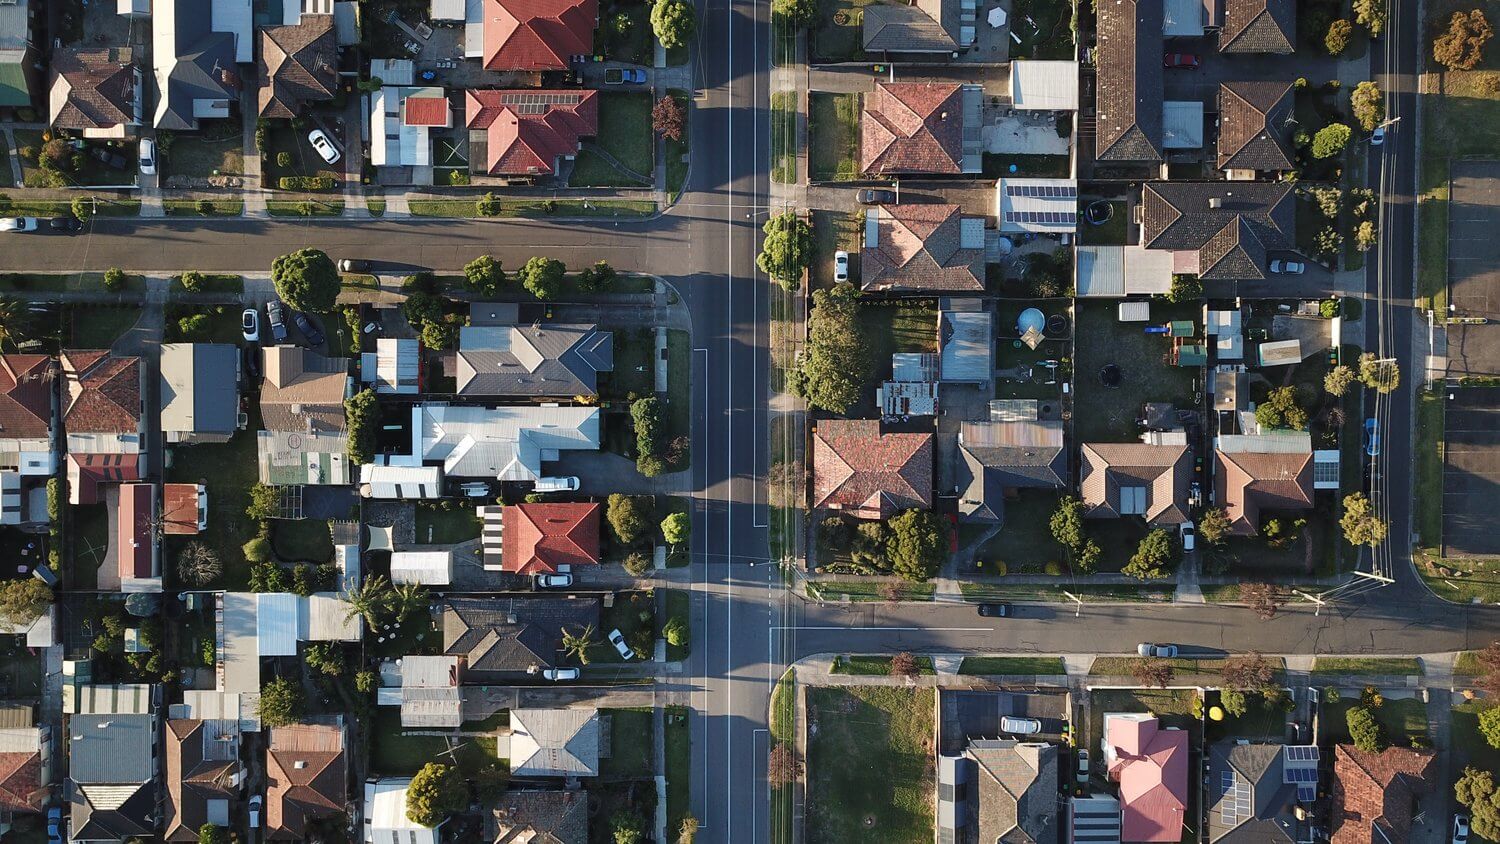 Overhead view of urban neighborhood